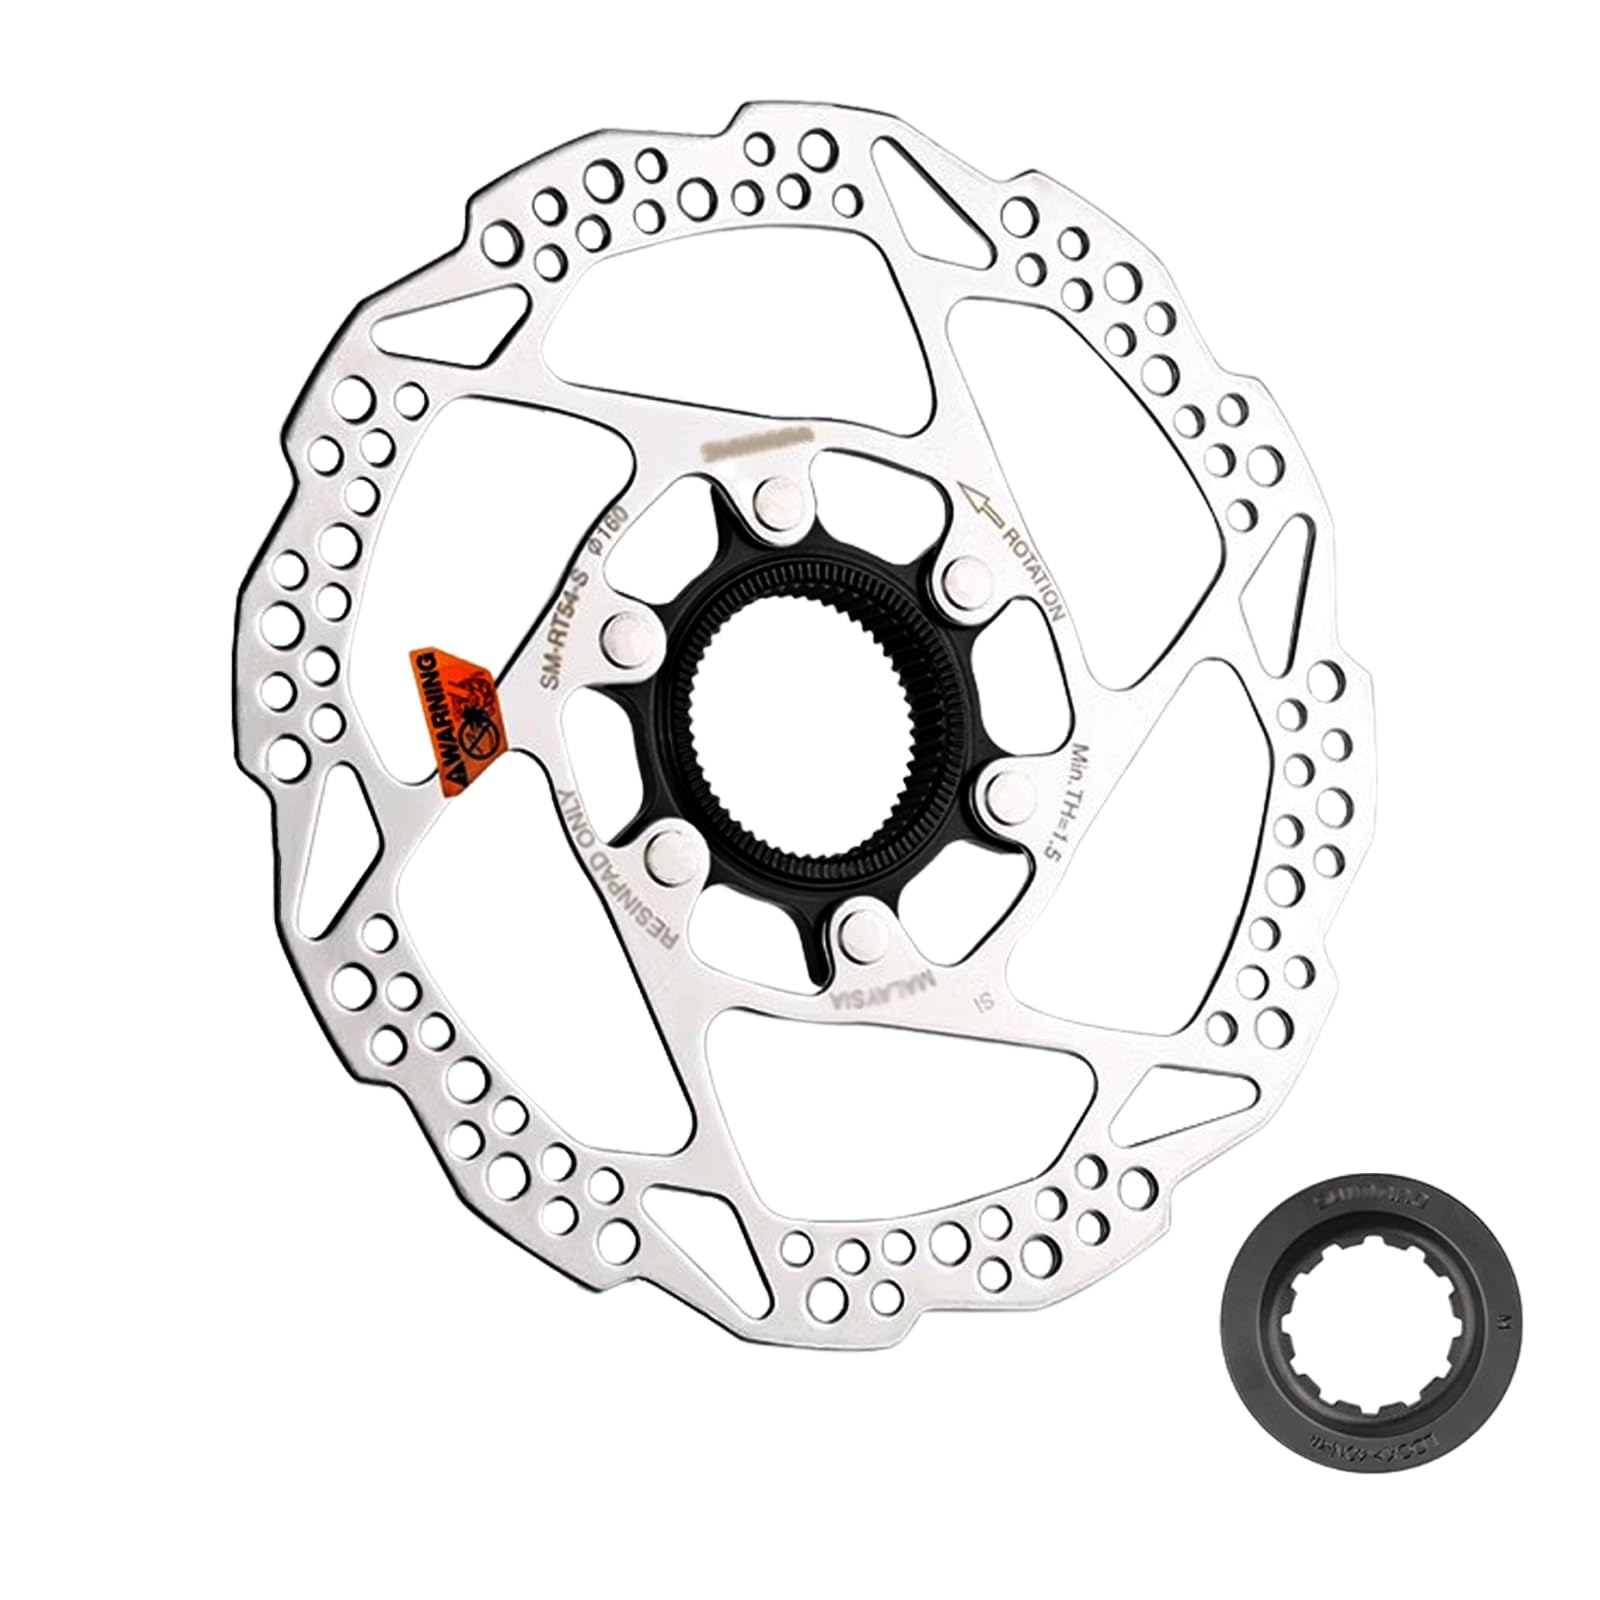 Jane Eyre Fahrrad bremsscheibe kompatibel mit Shimano SM-RT54 160 mm Bremsscheibe Center Lock Bremsscheibenrotor geeignet für Rennräder und Mountainbikes von Jane Eyre